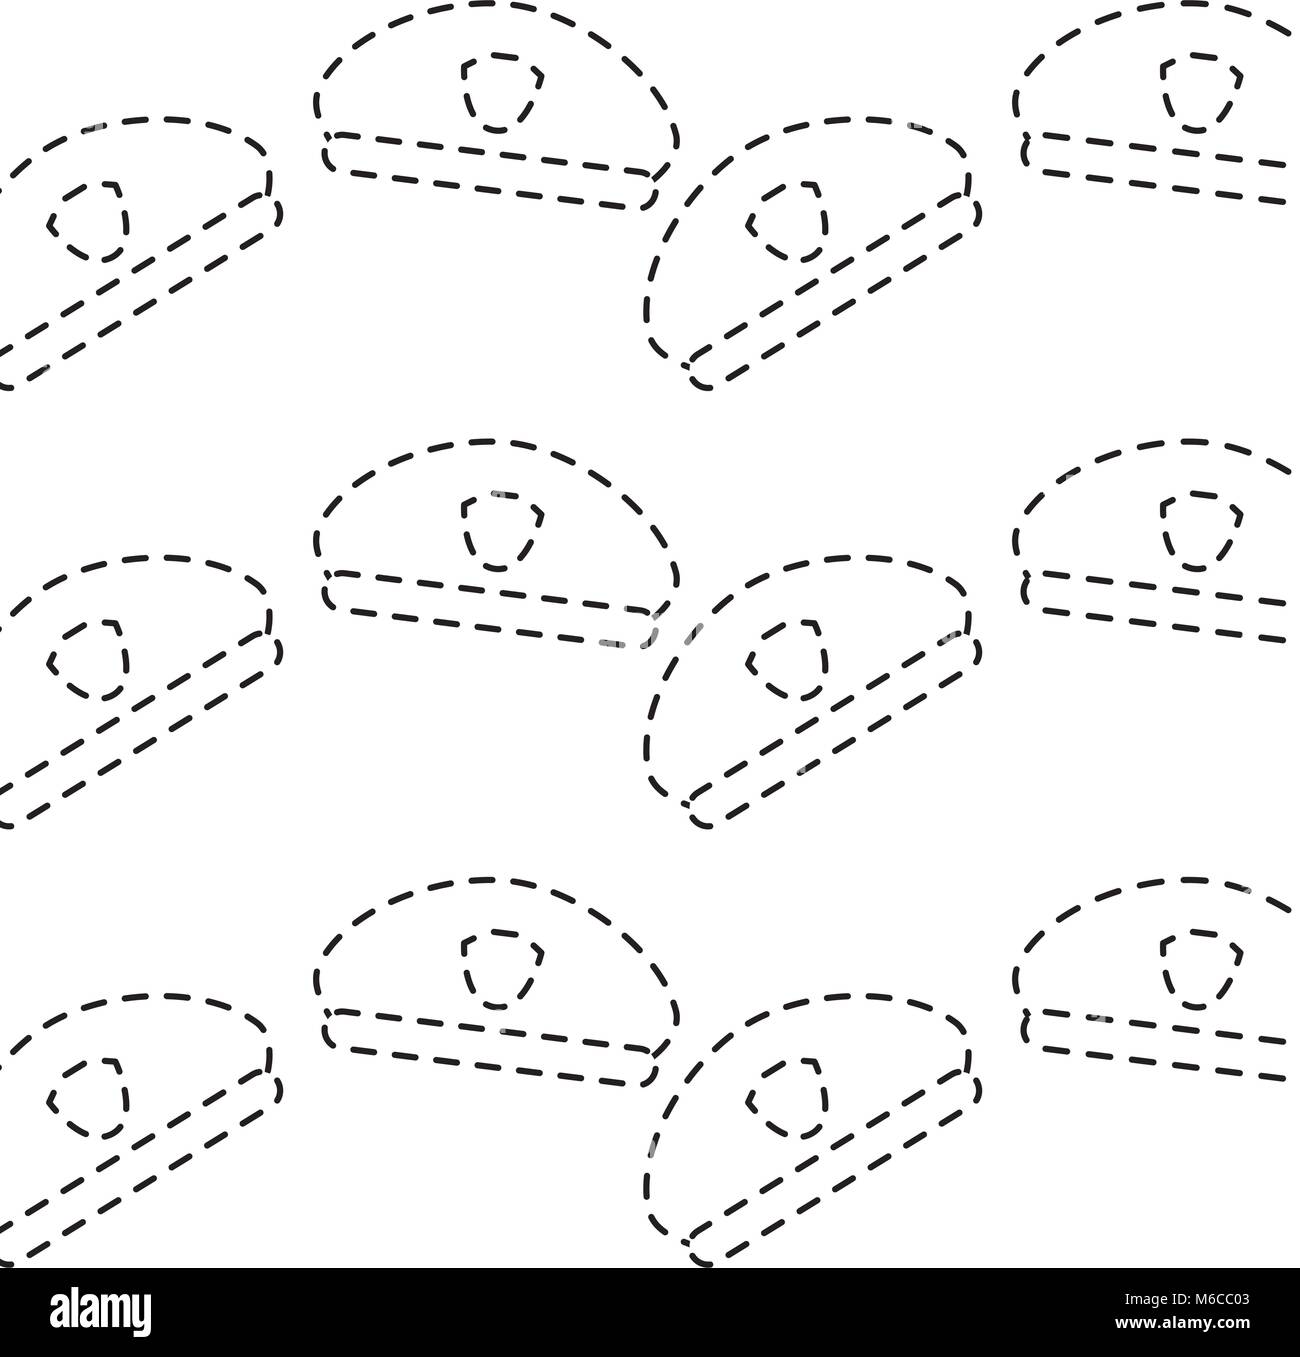 police hat pattern image vector illustration design  black dotted line Stock Vector